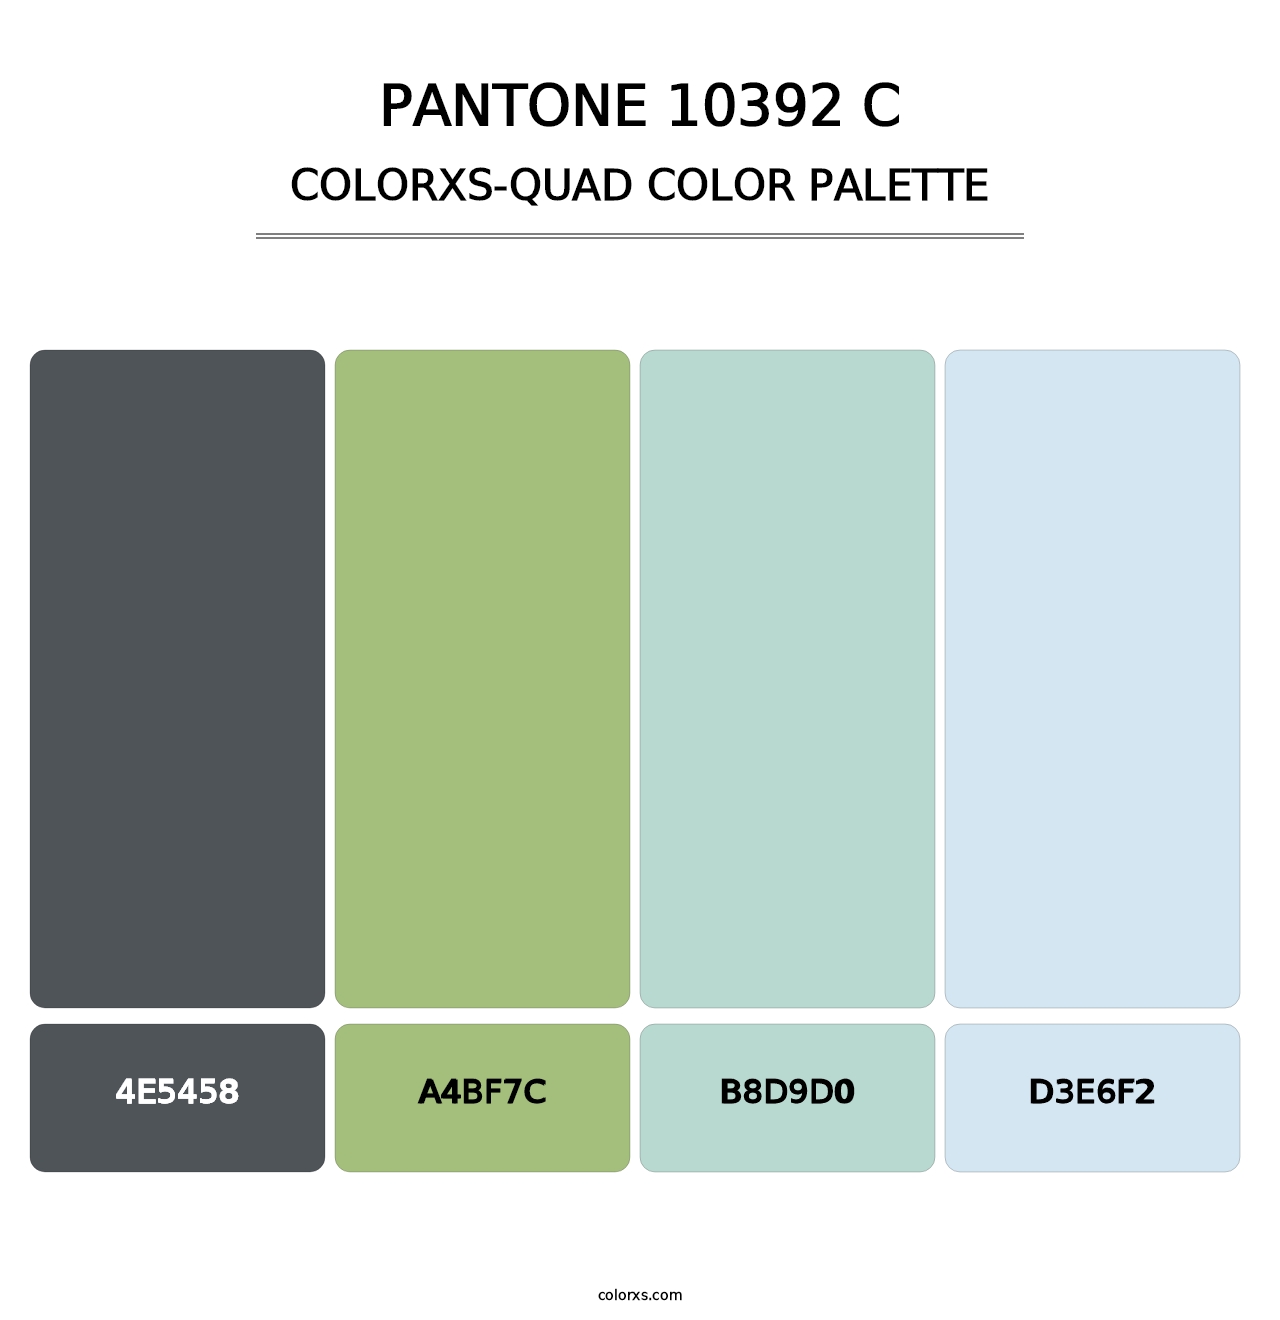 PANTONE 10392 C - Colorxs Quad Palette